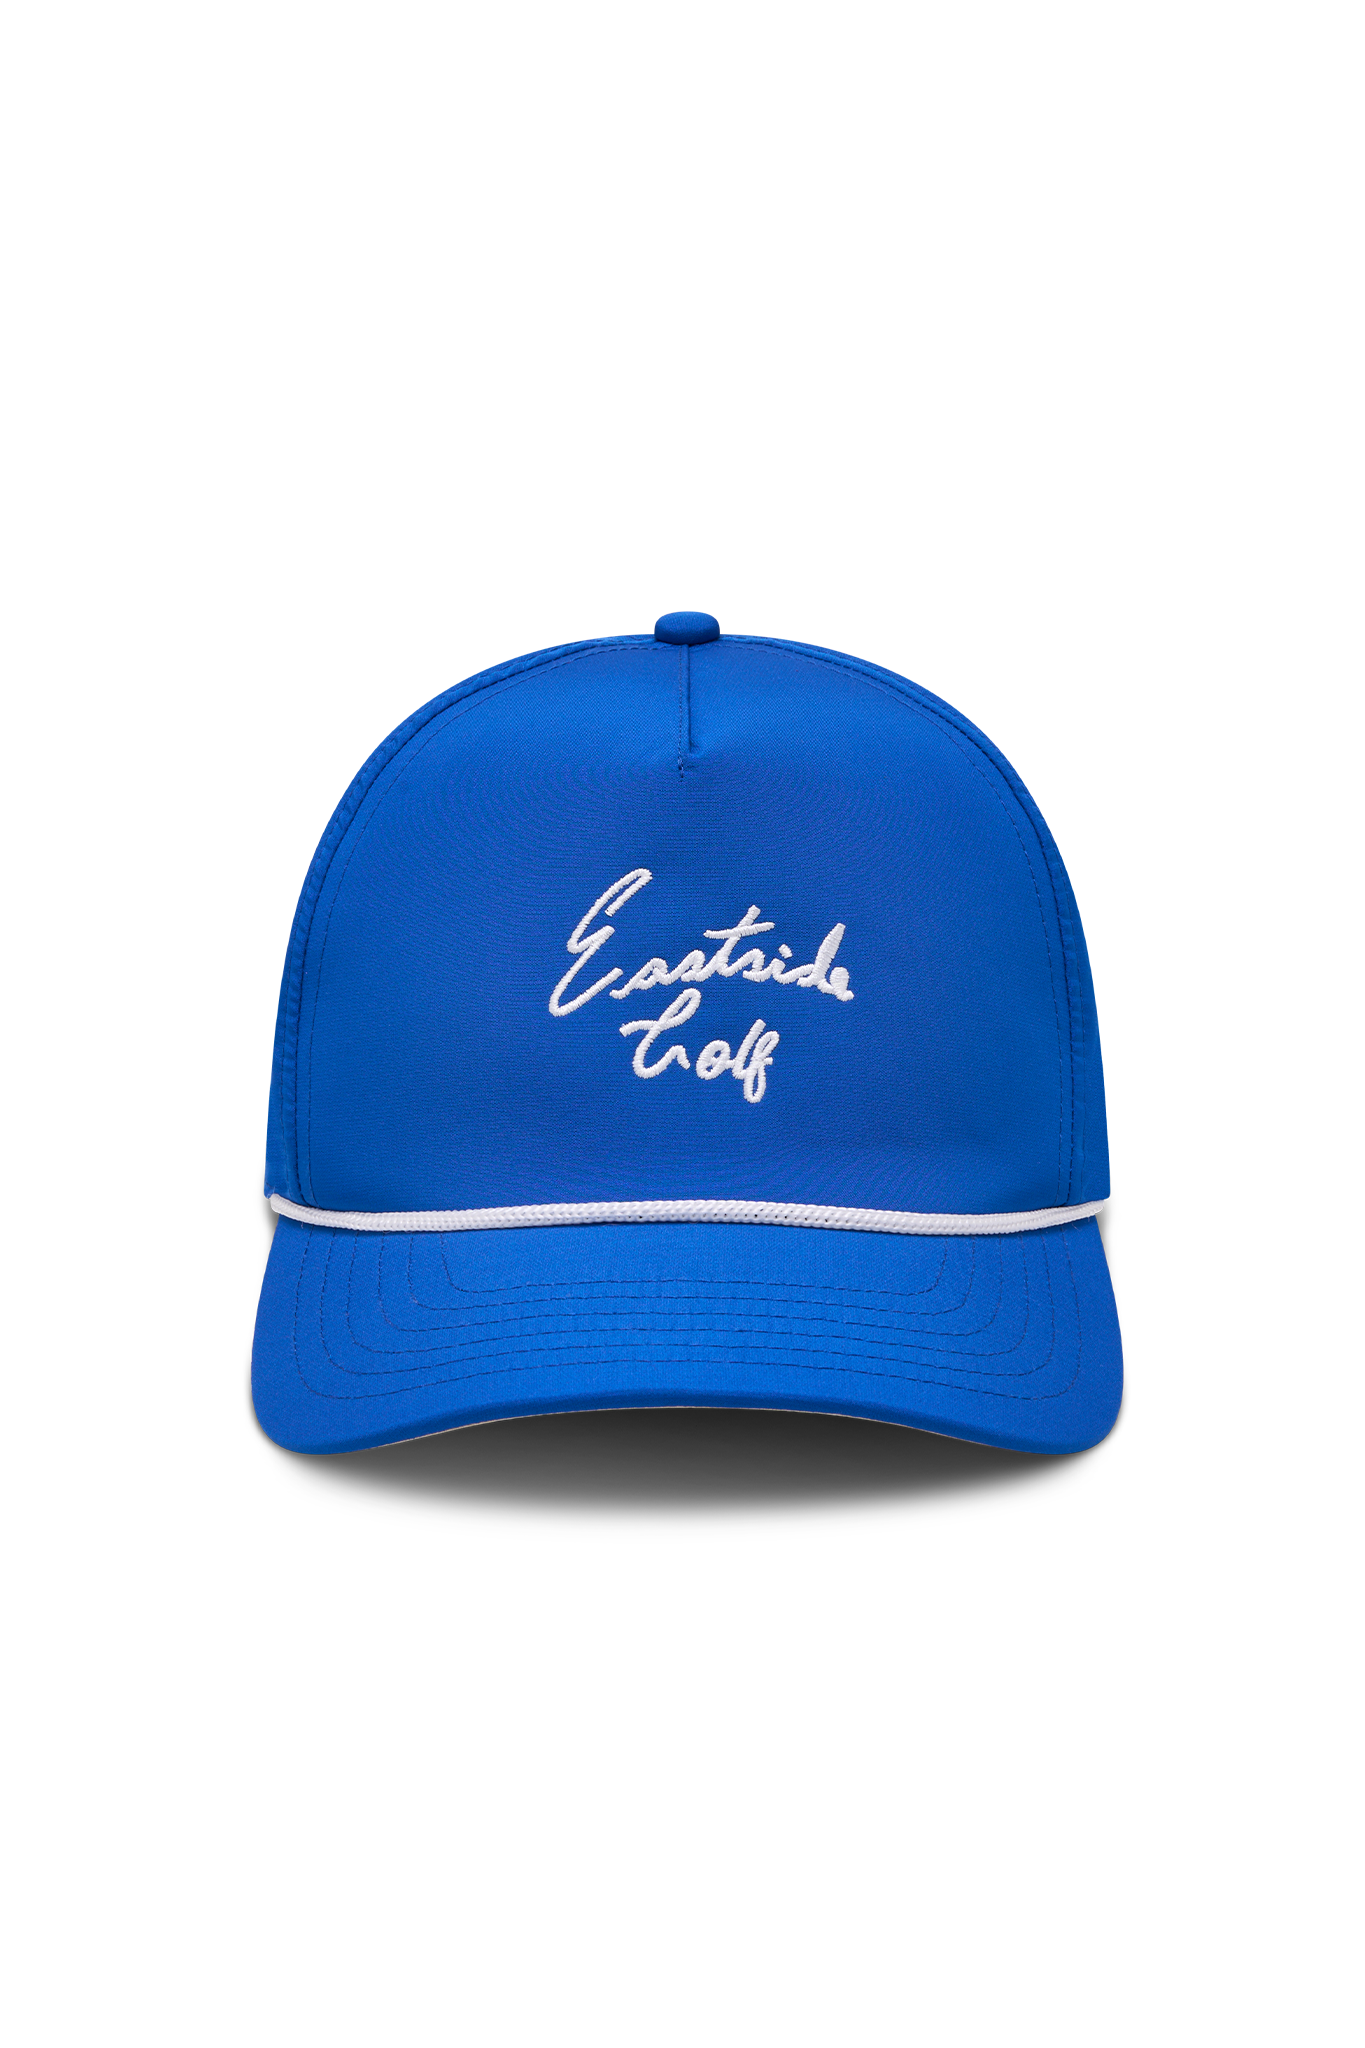 Headwear – Eastside Golf